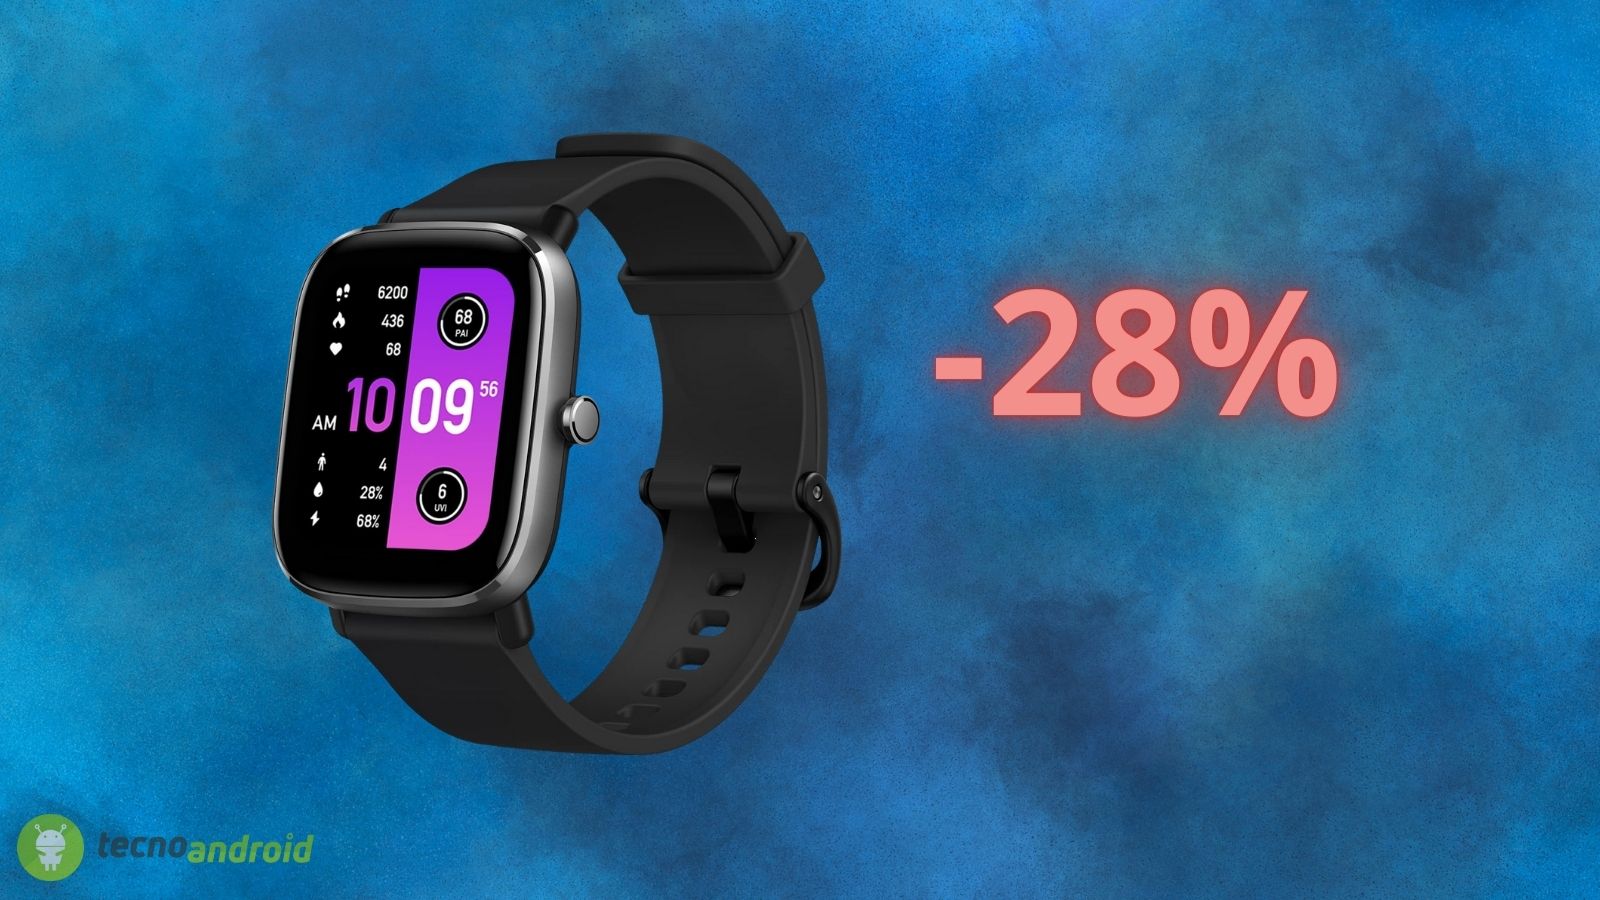 Smartwatch AMAZFIT a prezzo BOMBA con l'Amazon Black Friday (-30%)